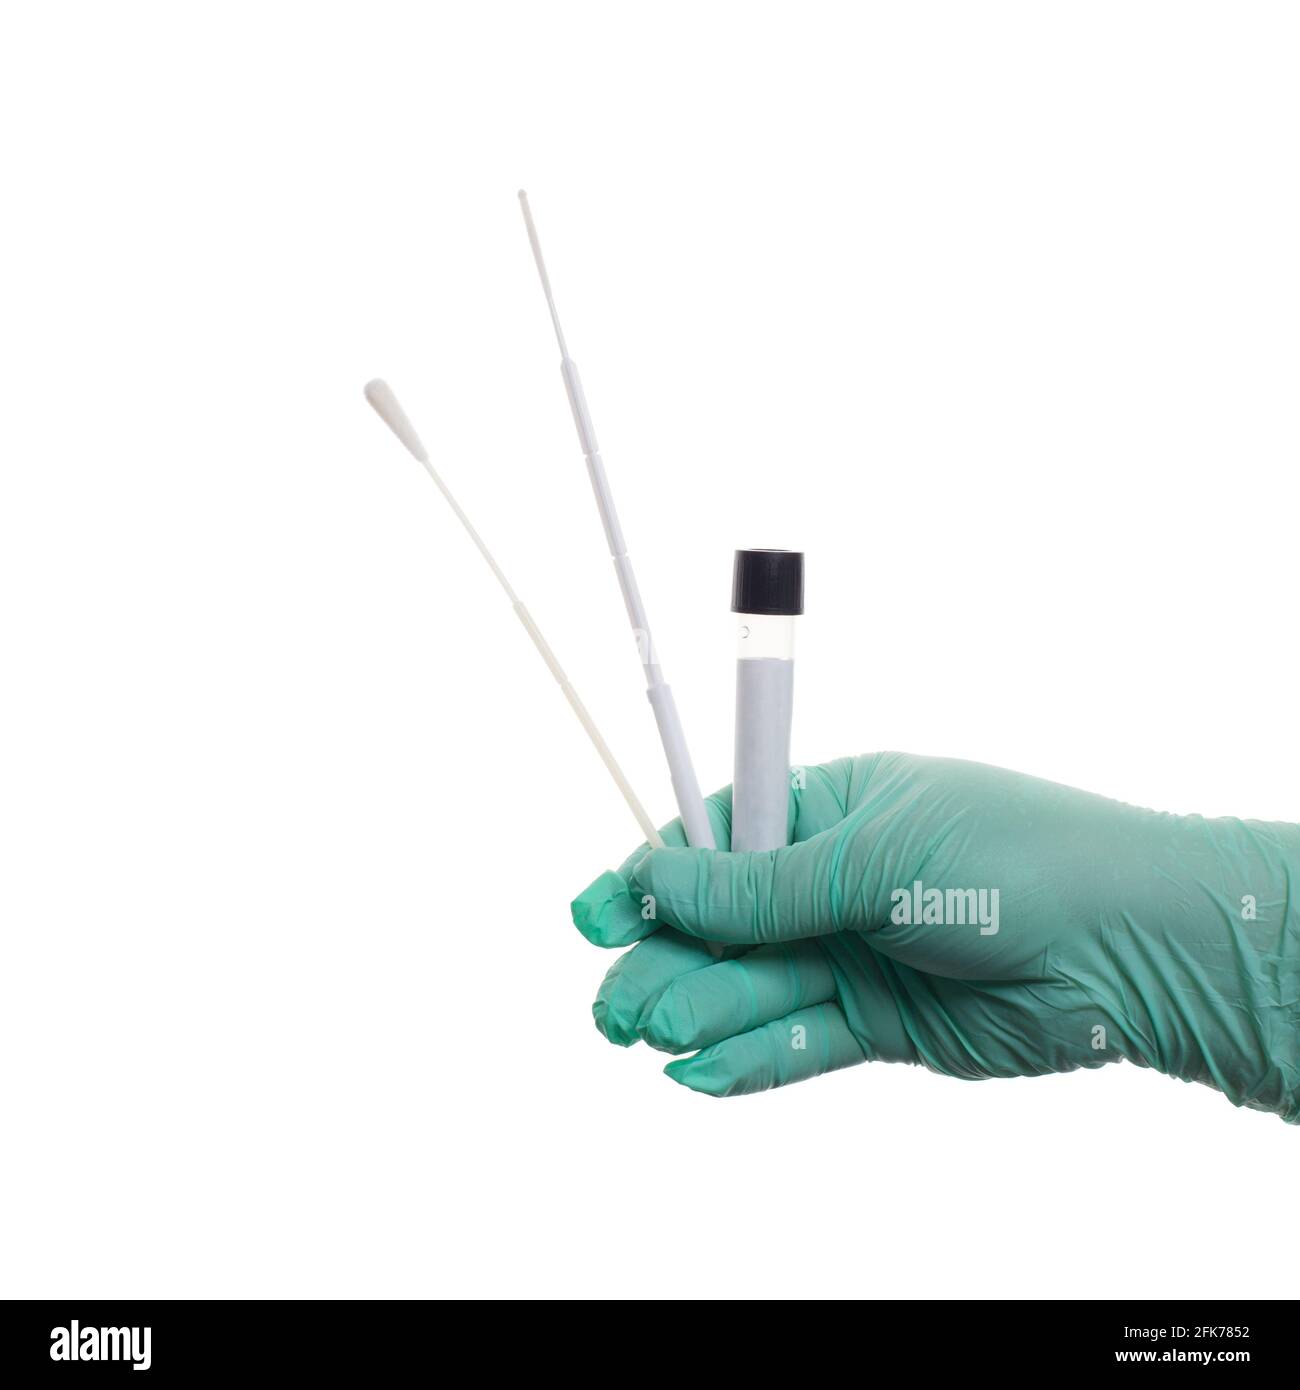 Kit de test du coronavirus chez un professionnel de la santé isolé à la main. Médecine, santé et concept Covid-19 Banque D'Images